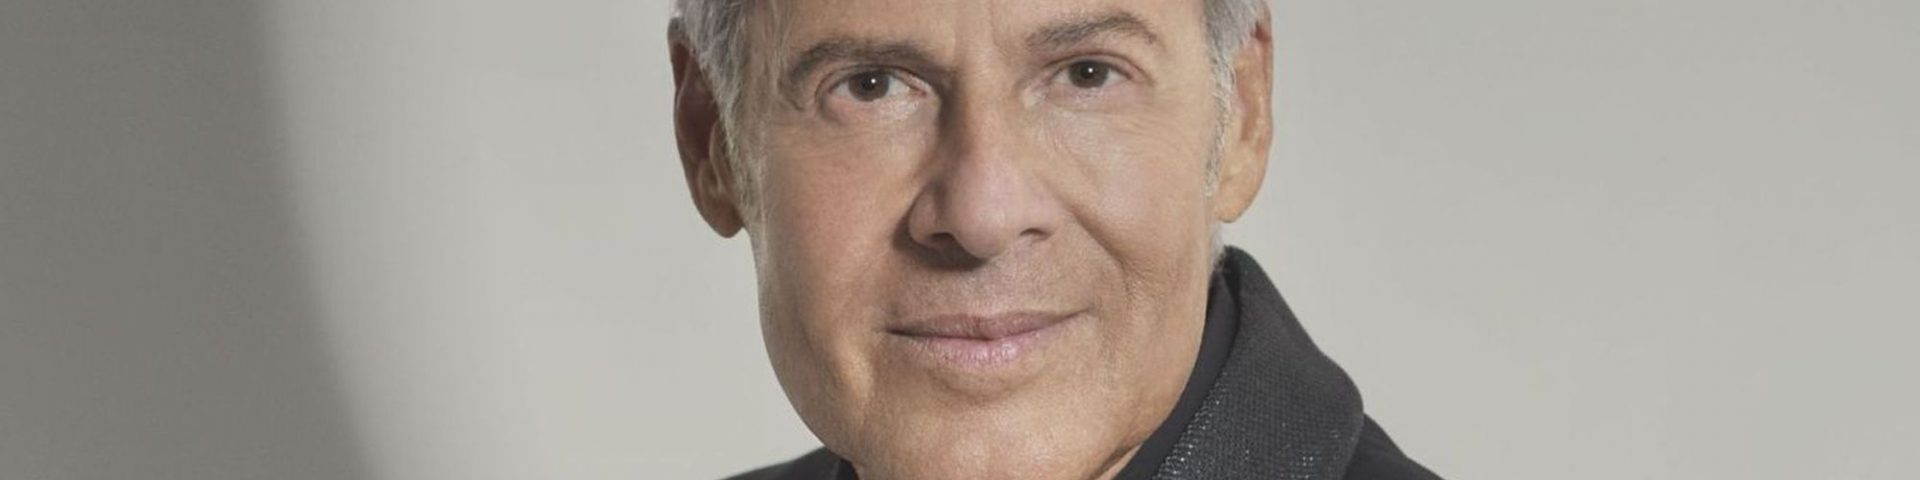 Claudio Baglioni: rinviati all’estate 2022 i concerti di “Dodici note” previsti a Roma, Siracusa e Verona